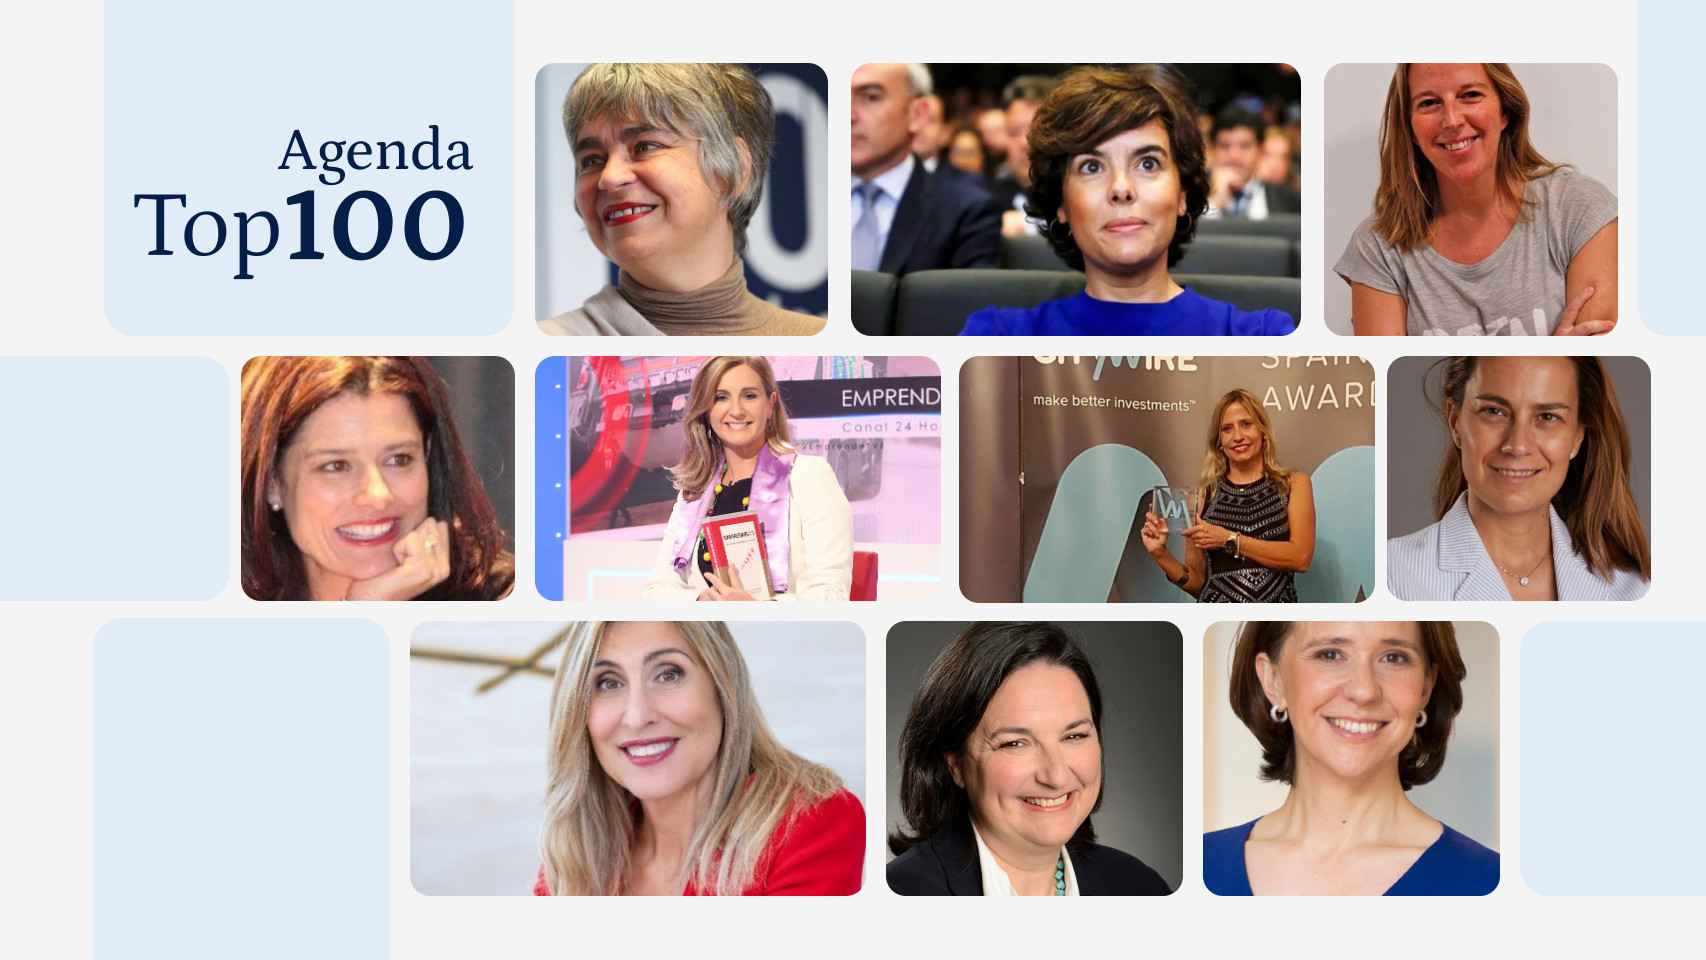 La agenda semanal de 'Las Top 100 Mujeres Líderes': de